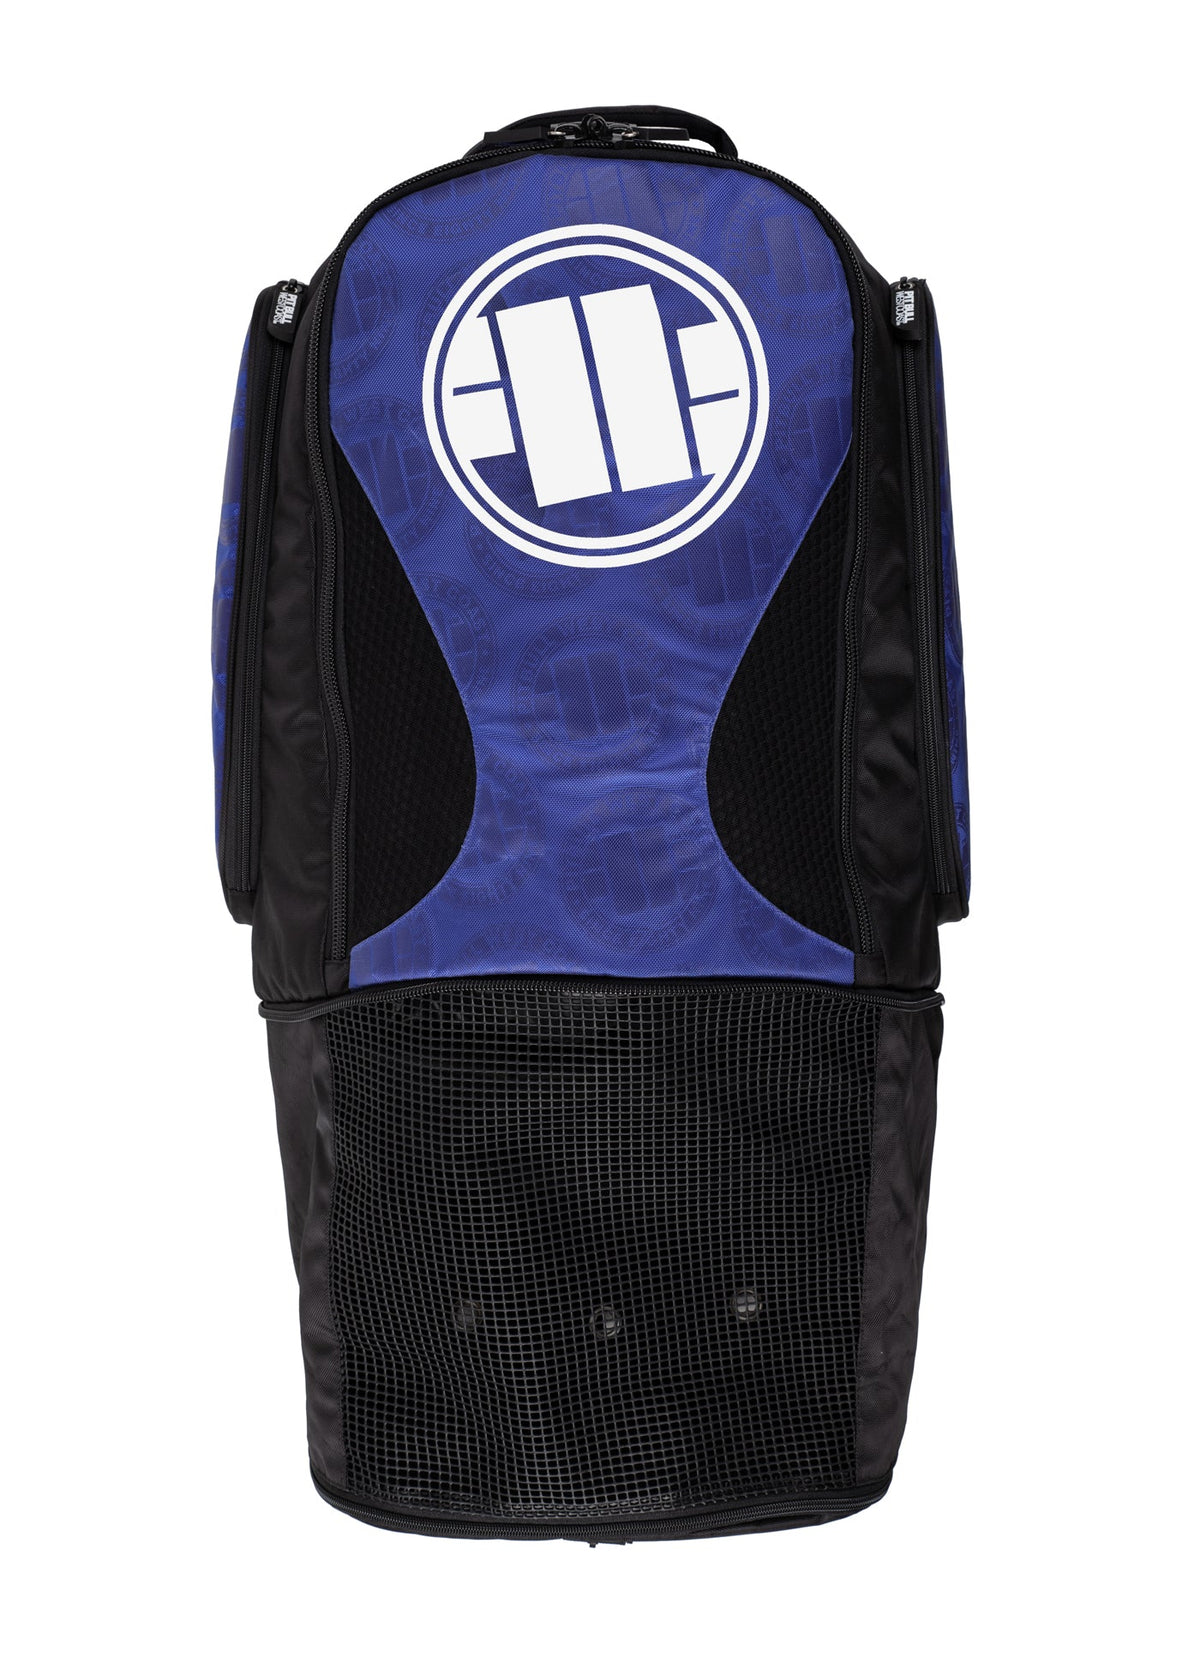 LOGO Big Royal Blue Training Backpack